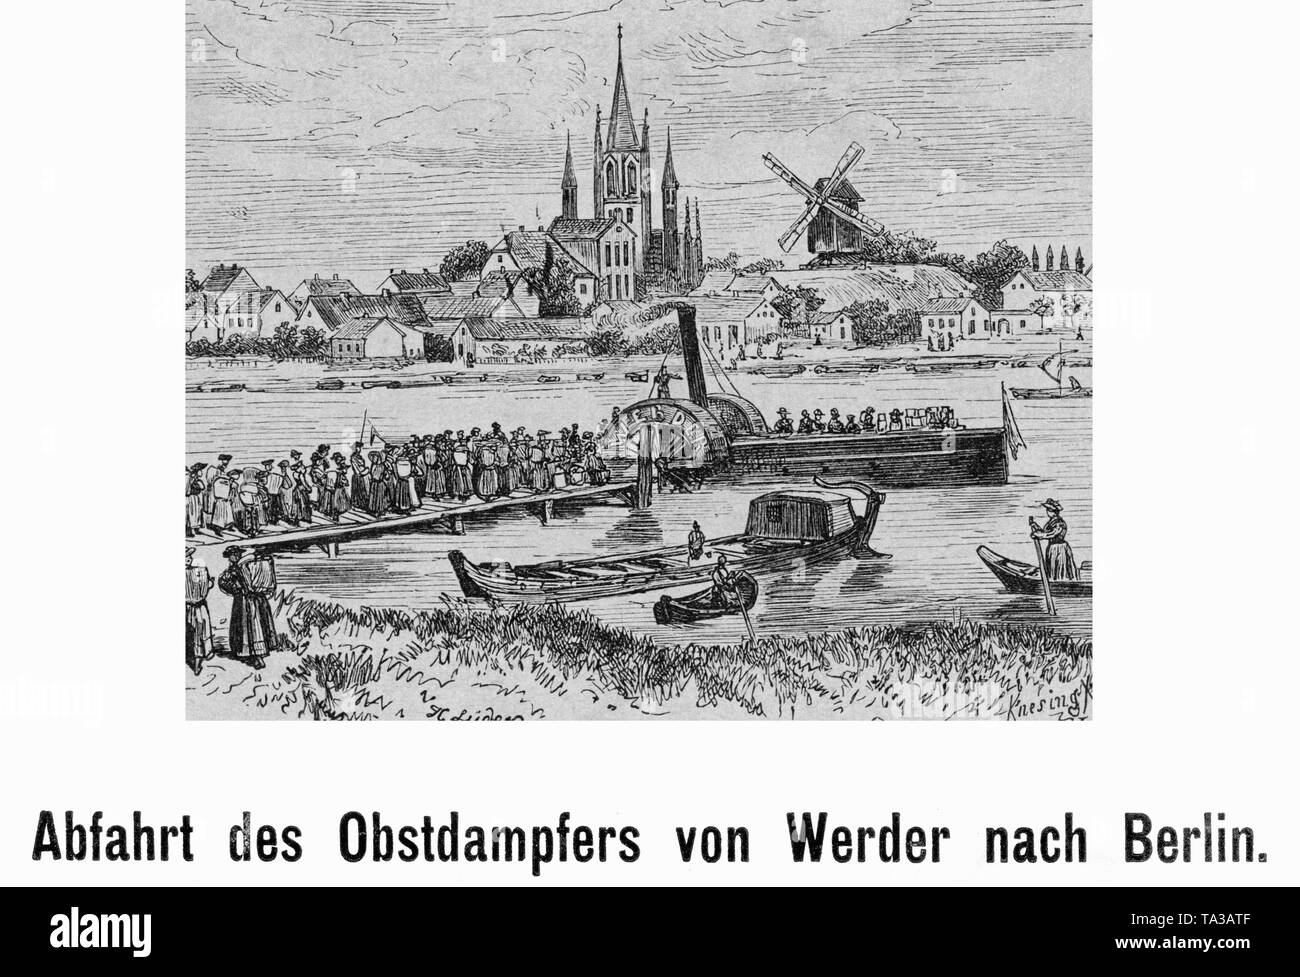 Frucht ist von Werder nach Berlin über die Havel gebracht. Undatiertes Foto aus dem 19. Jahrhundert. Stockfoto